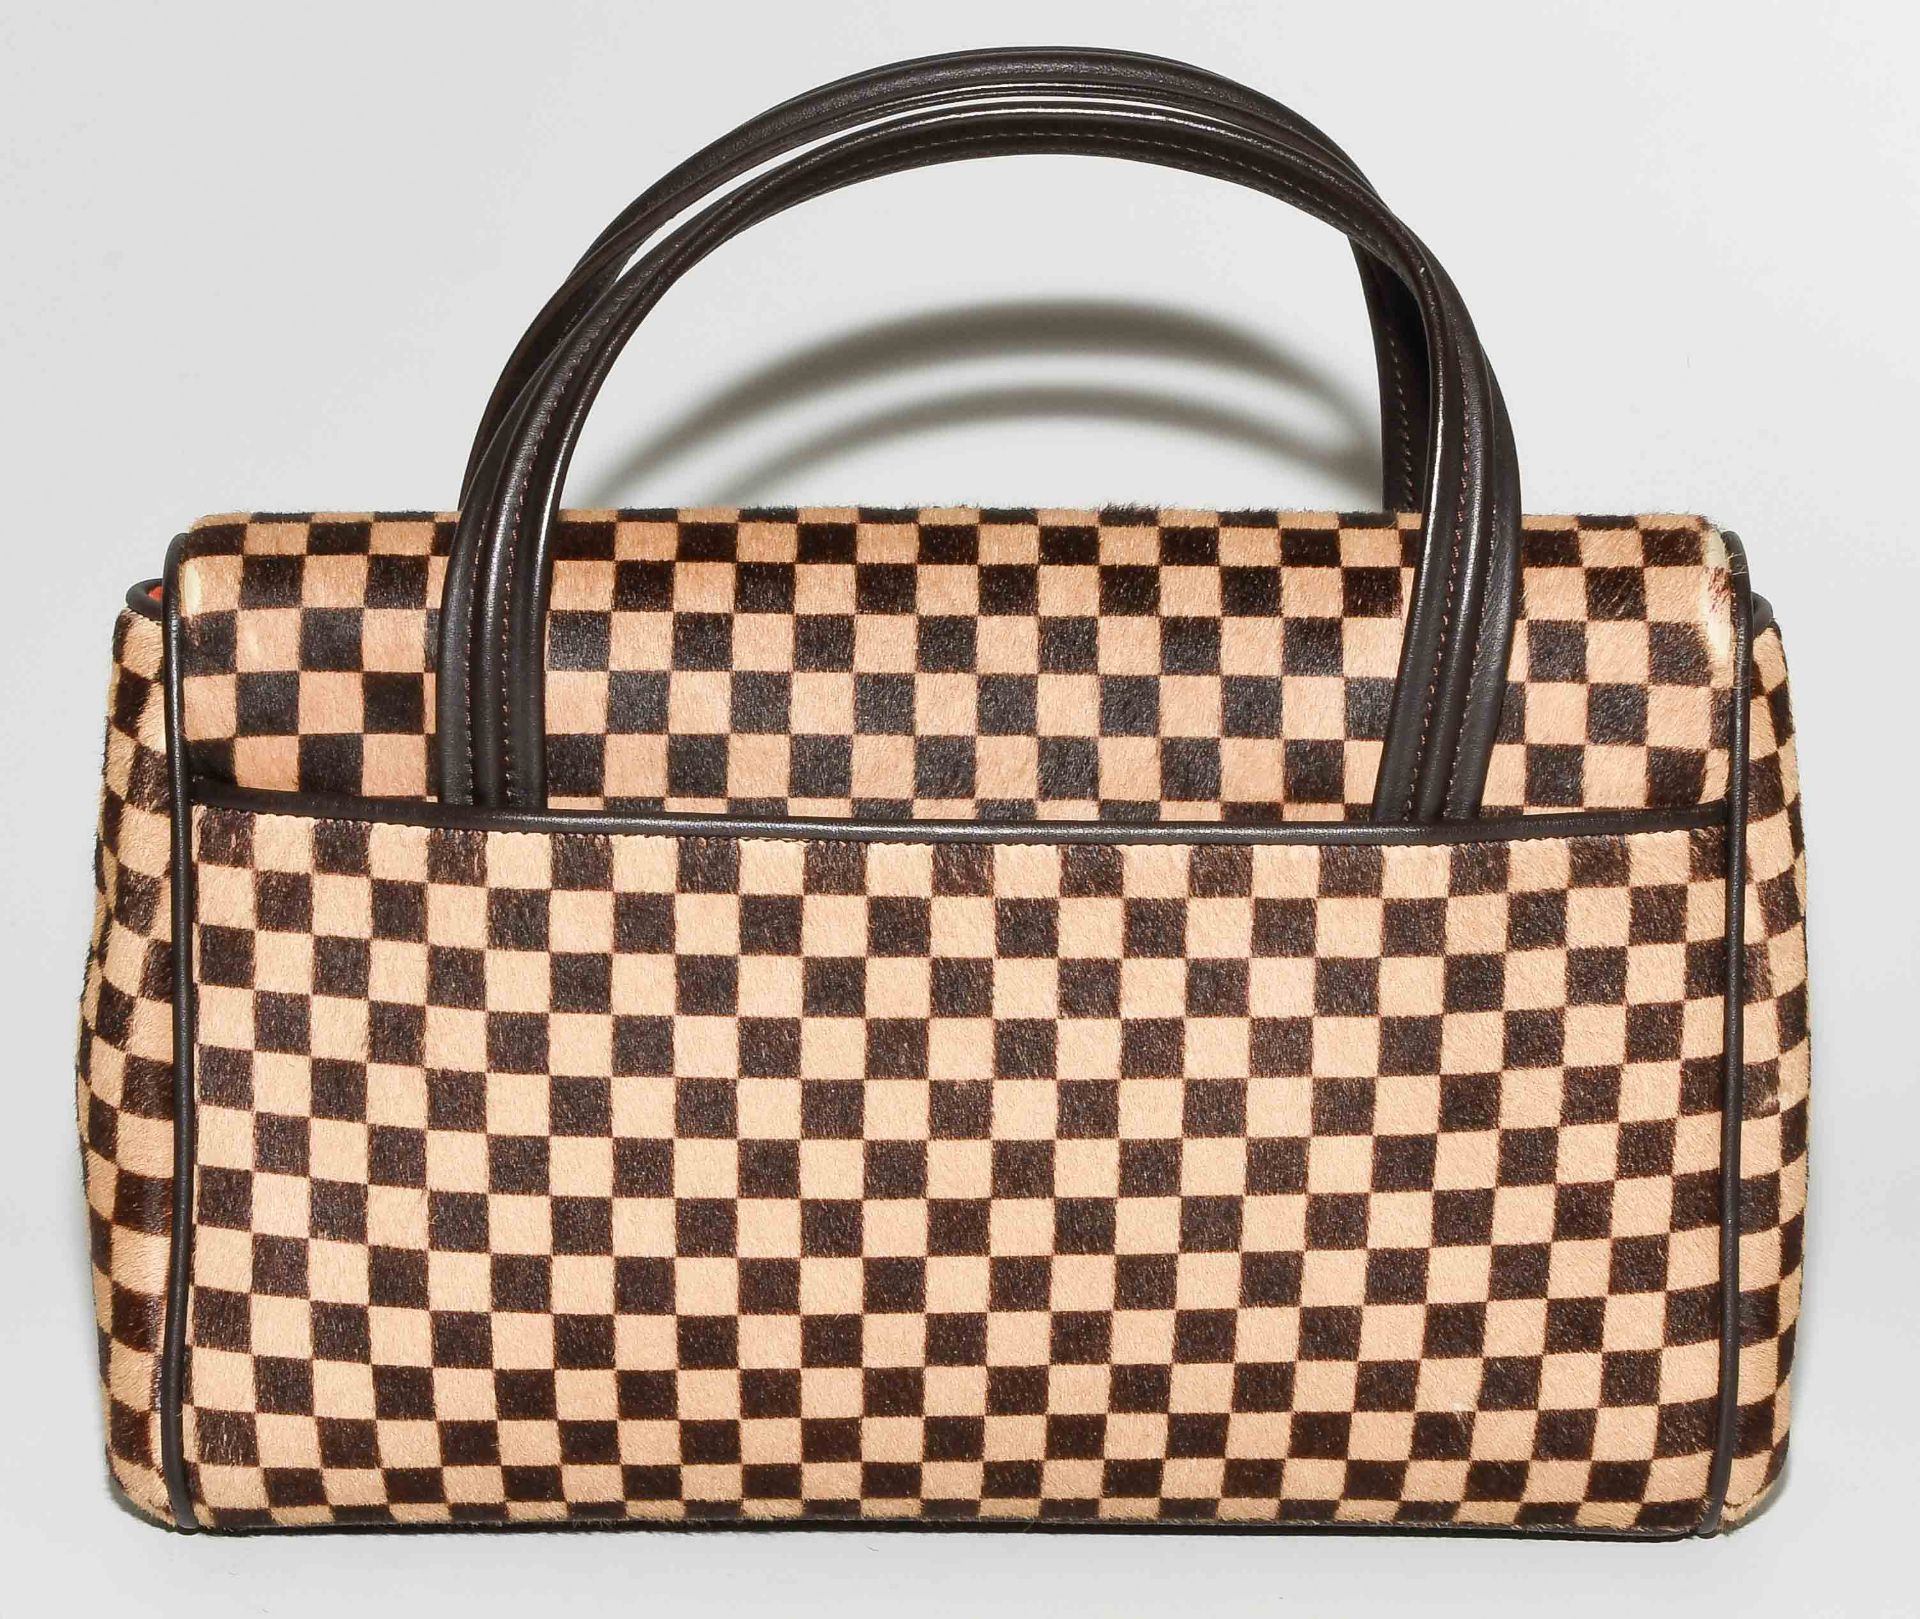 Louis Vuitton, Handtasche "Lionne" - Bild 4 aus 14